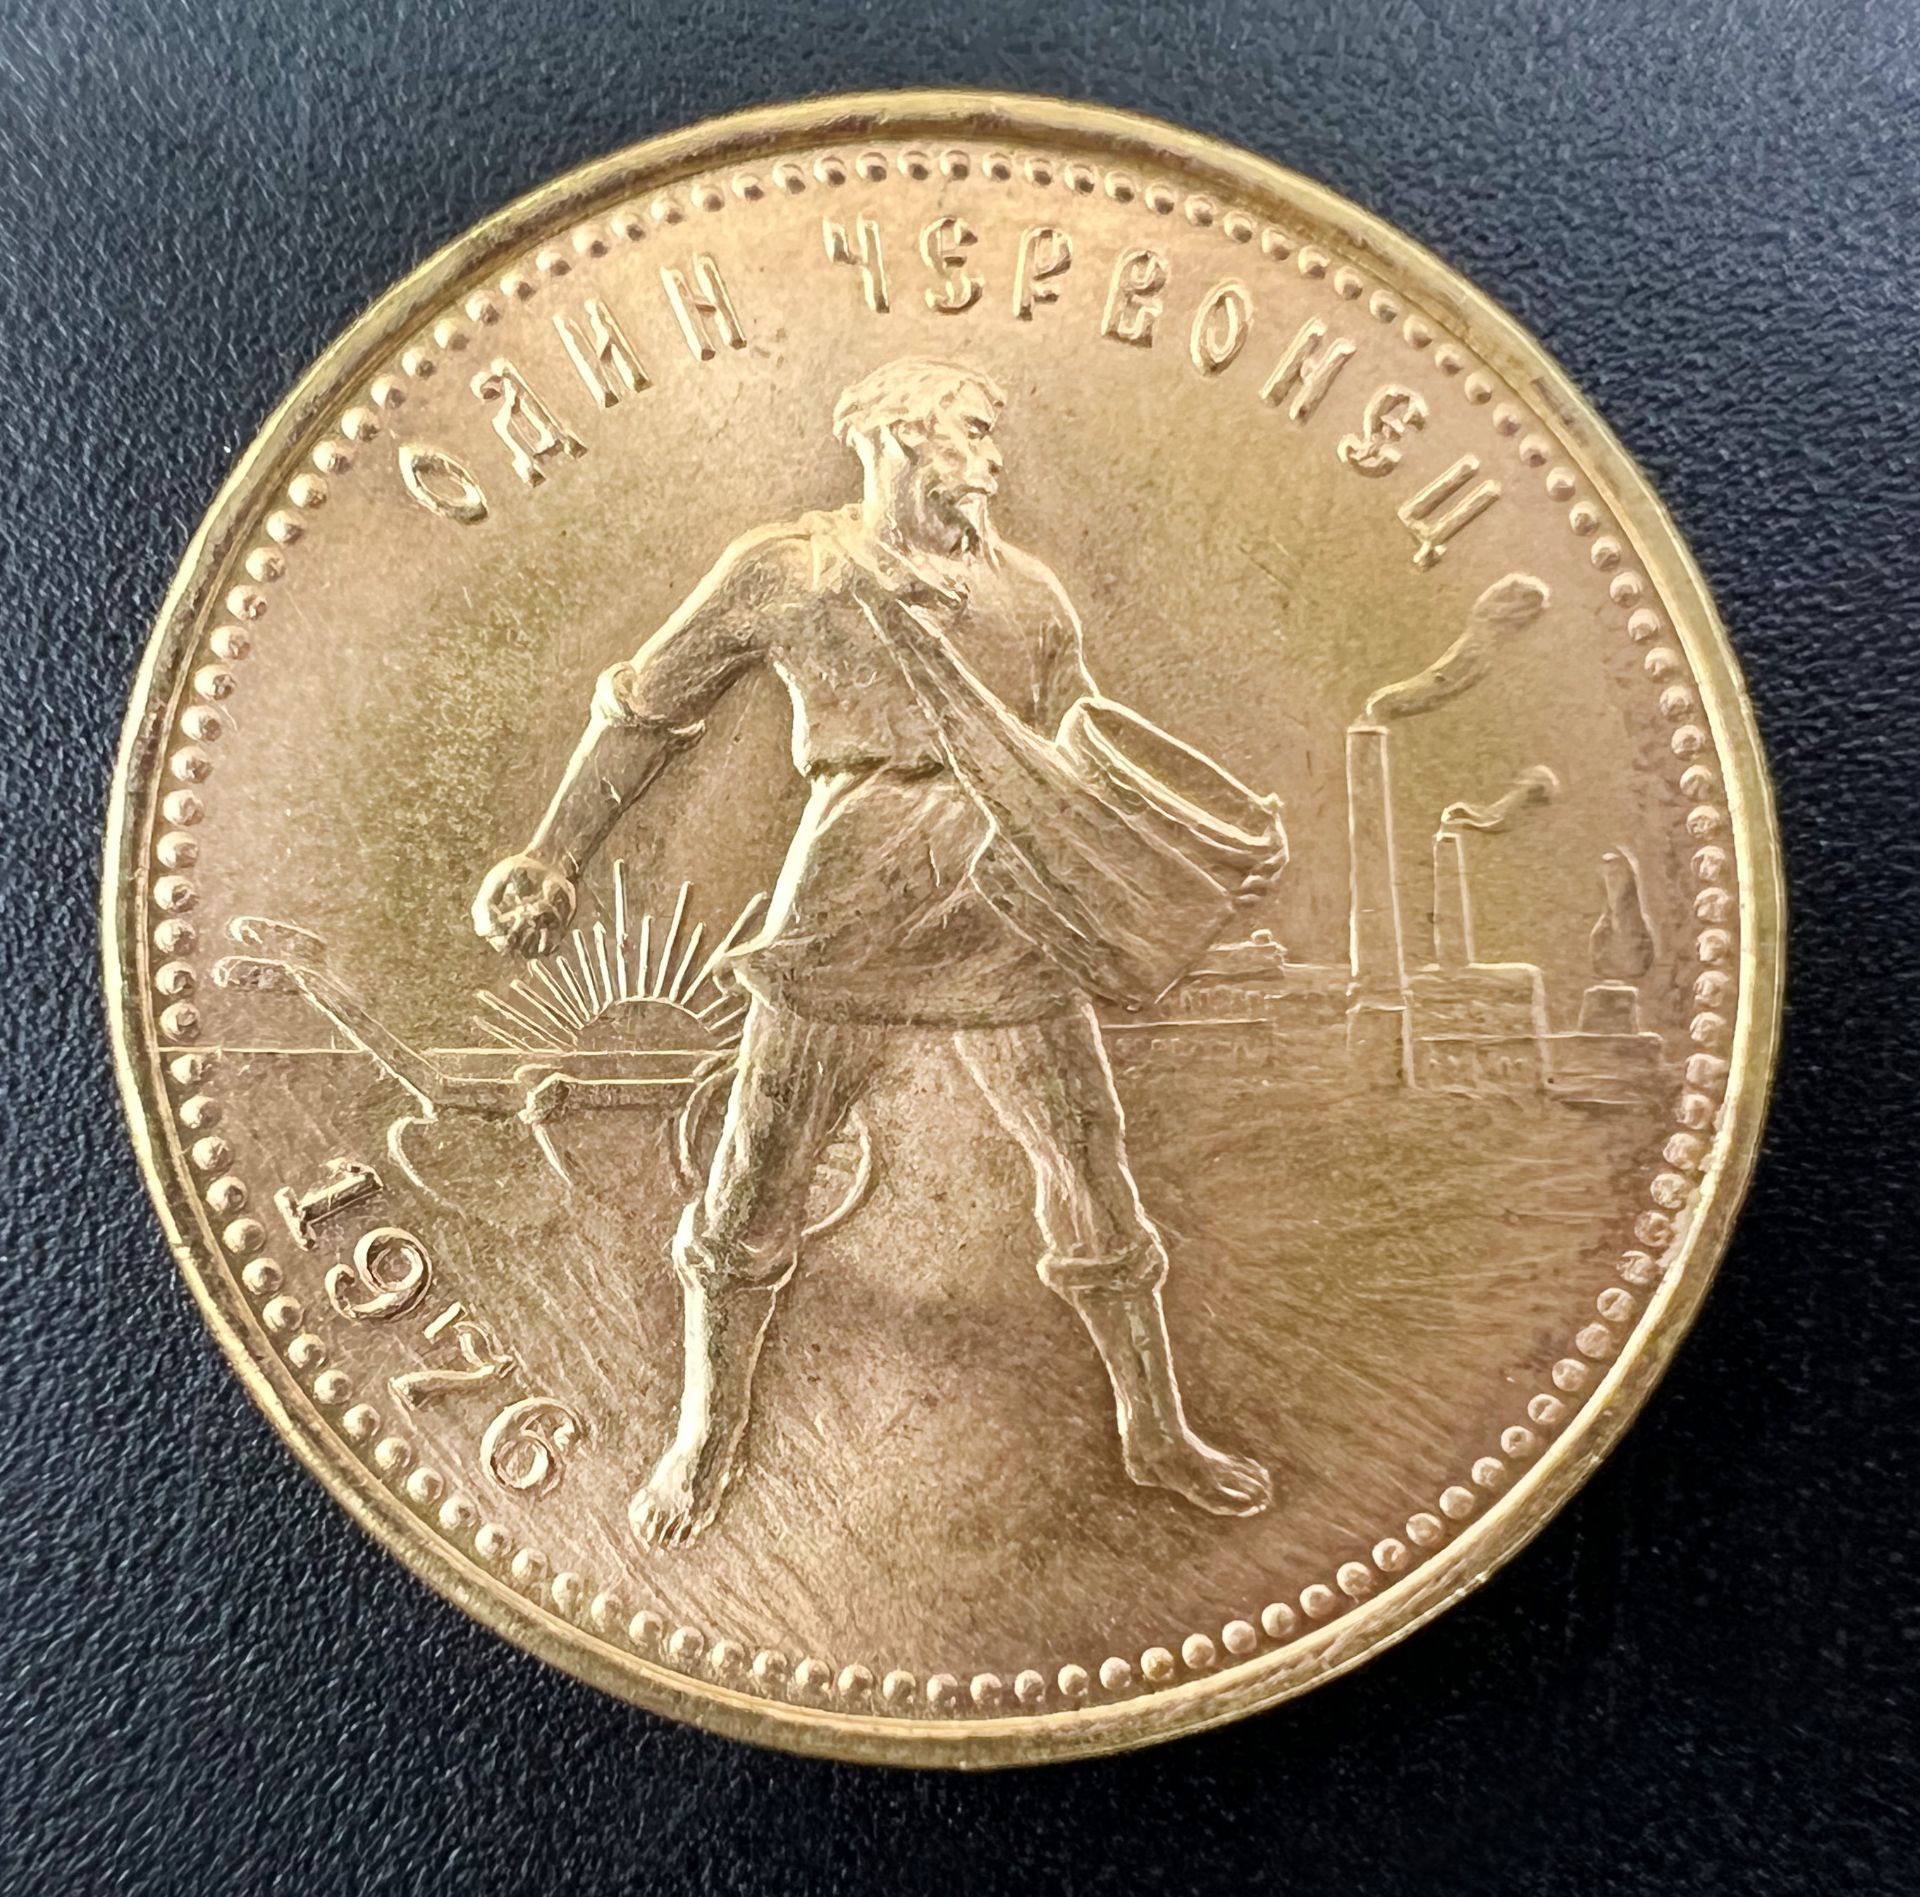 Goldmünze 1 Tscherwonetz. Sowjetunion 1976. 900 Gold.